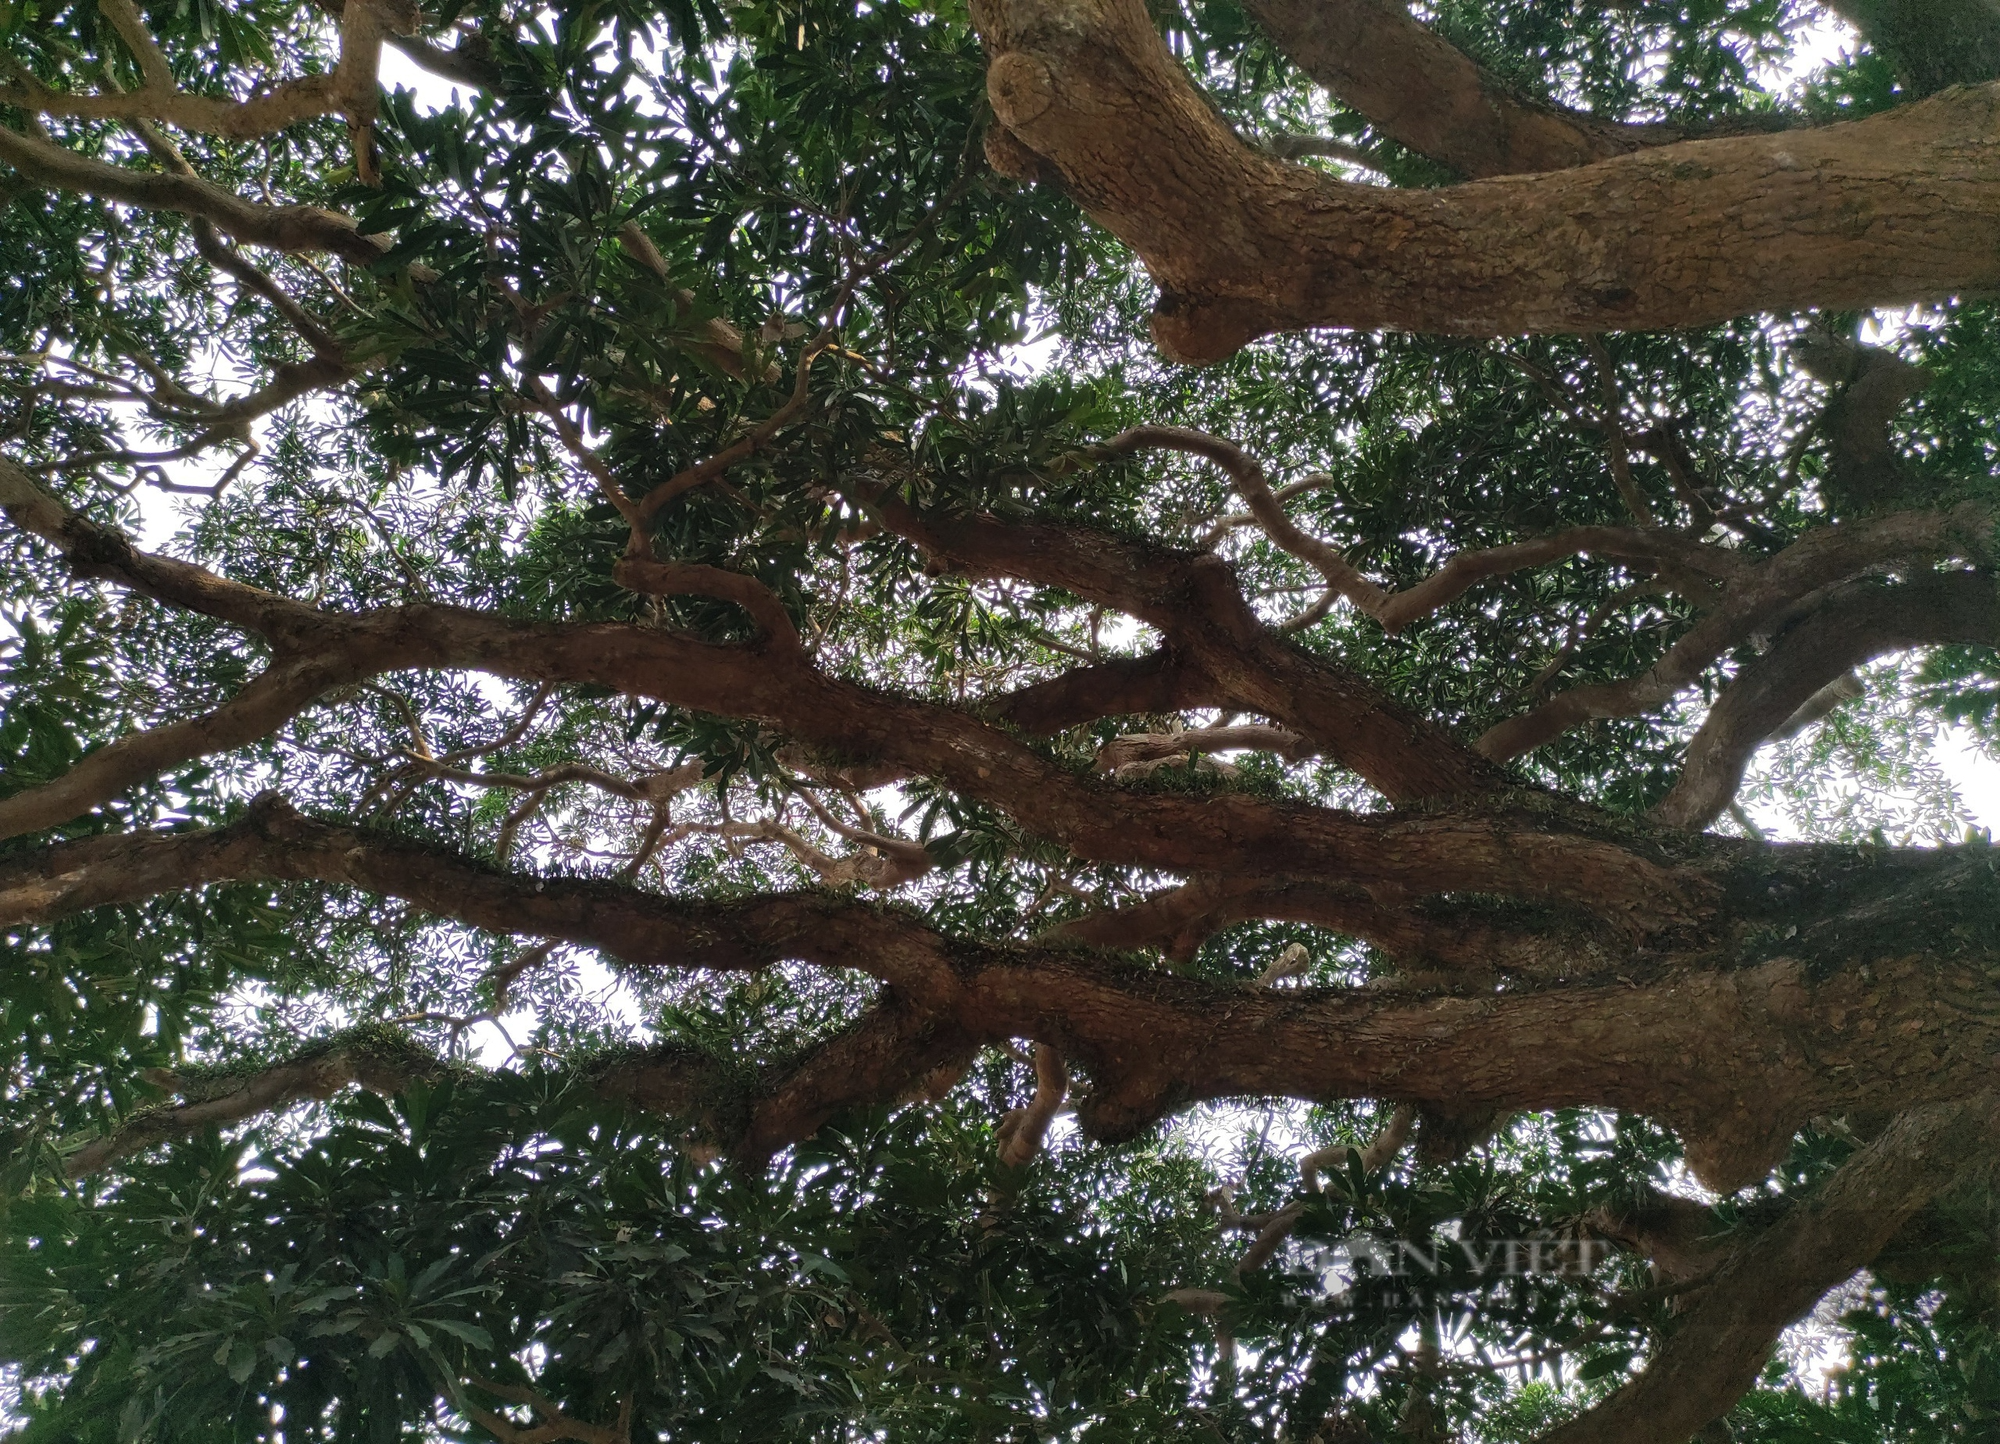 Cây trôi cổ thụ gần 800 năm tuổi sai trĩu quả ở Quốc Oai (Hà Nội) - Ảnh 4.